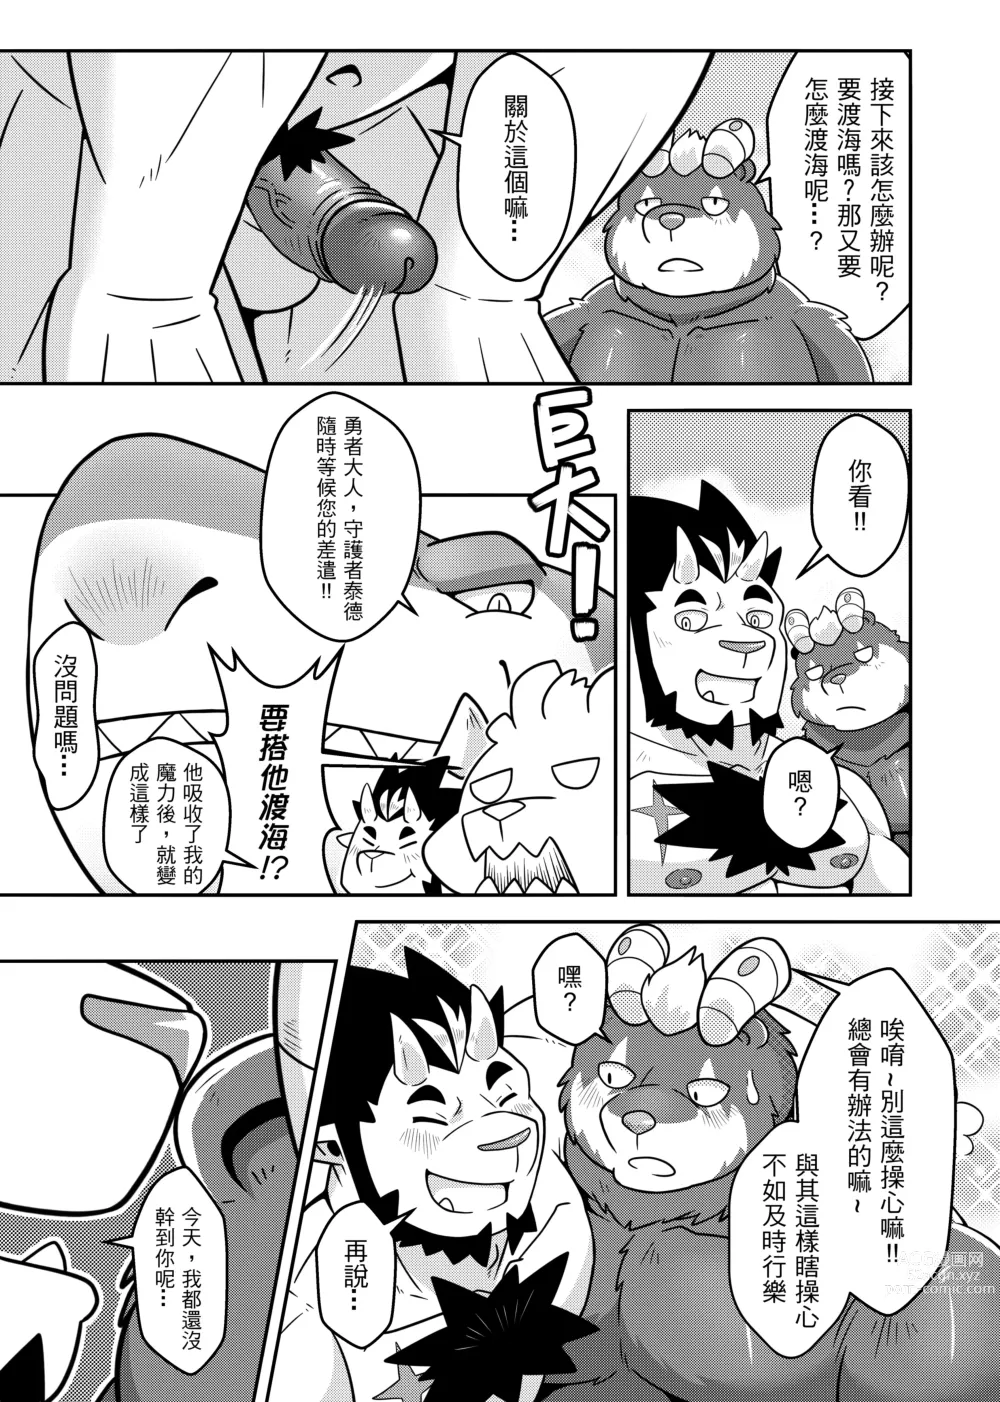 Page 41 of doujinshi 勇者的大小只有魔王塞得下3